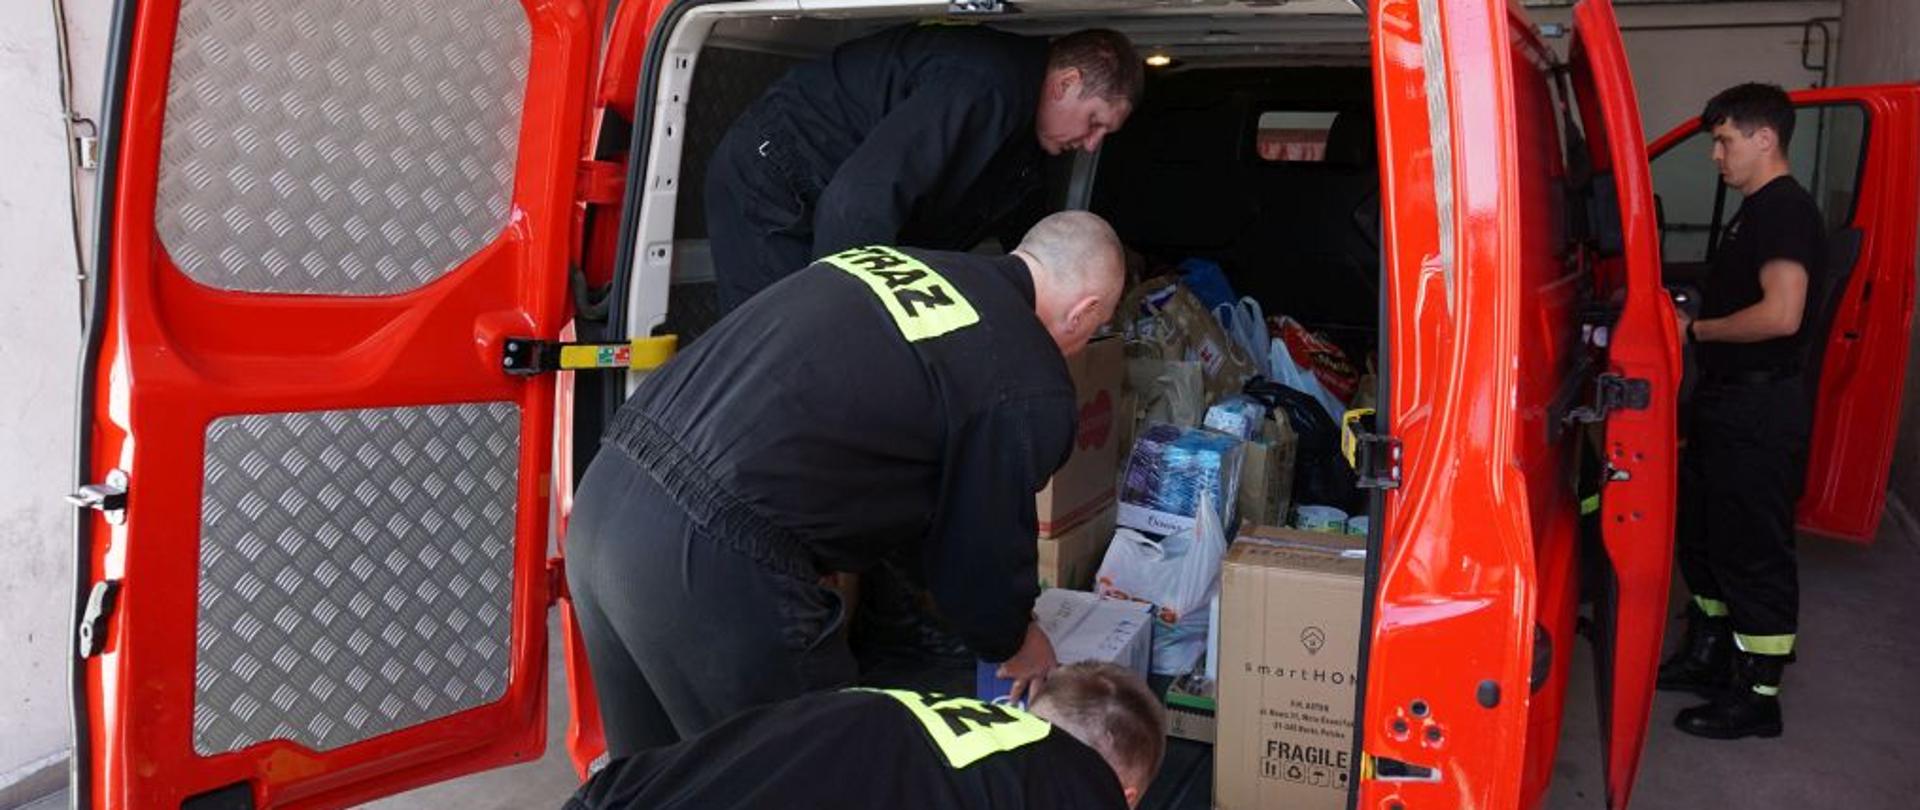 3 mężczyzn w czarnych mundurach strażackich pakuje do bagażnika czerwonego busa żywność i środki czystości.